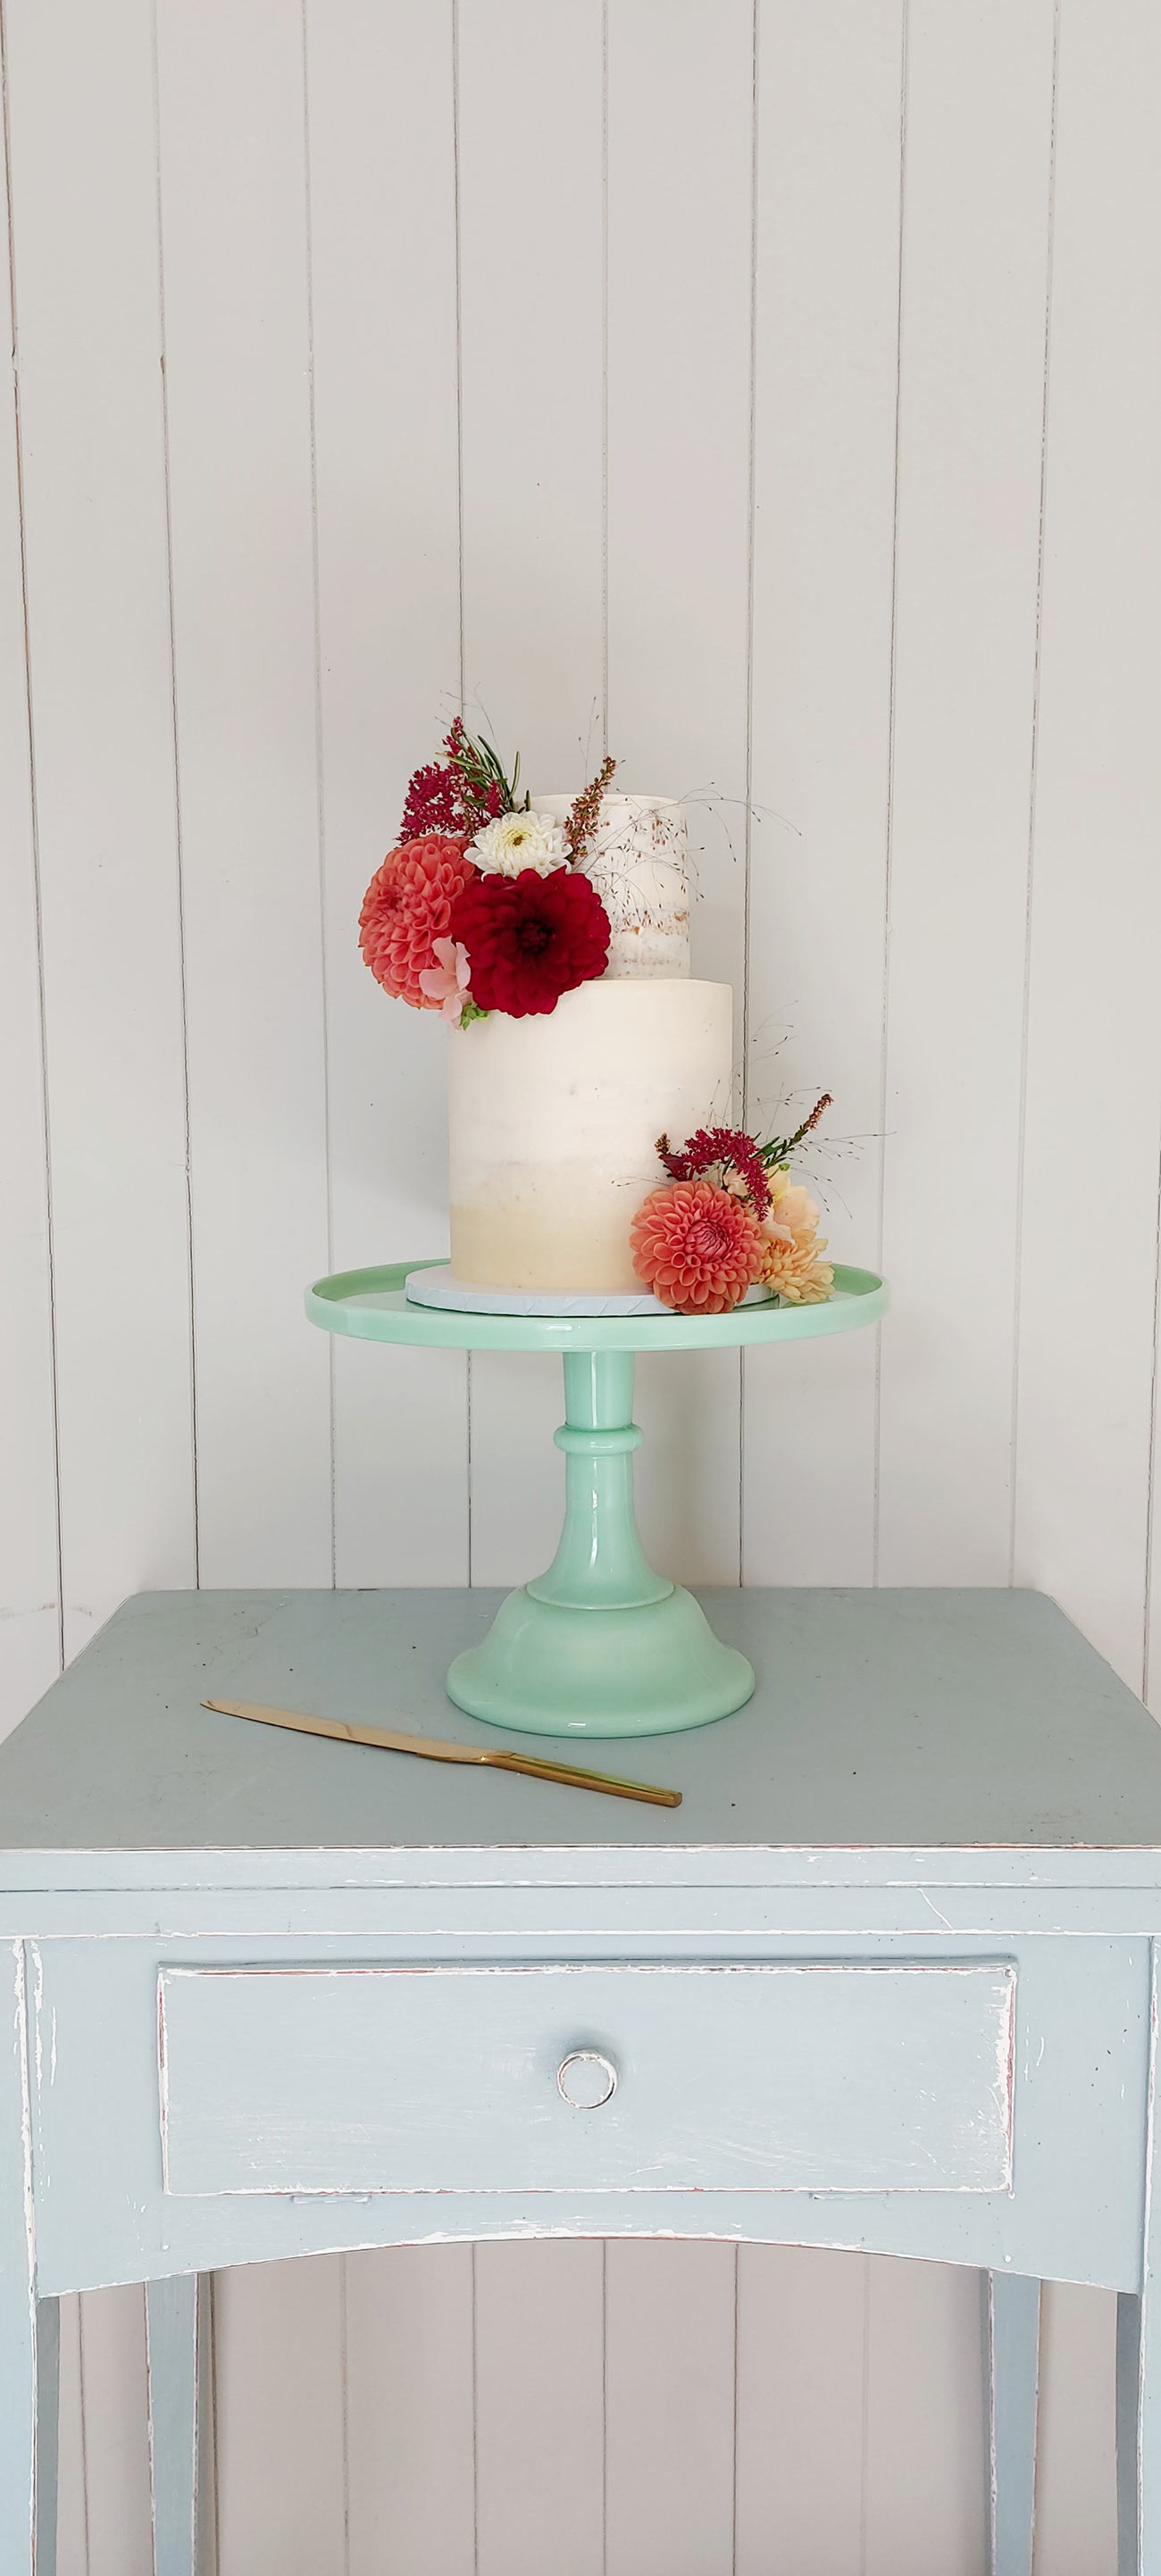 Flower Cakes Wed Feature Cornwall Devon Bride Groom1